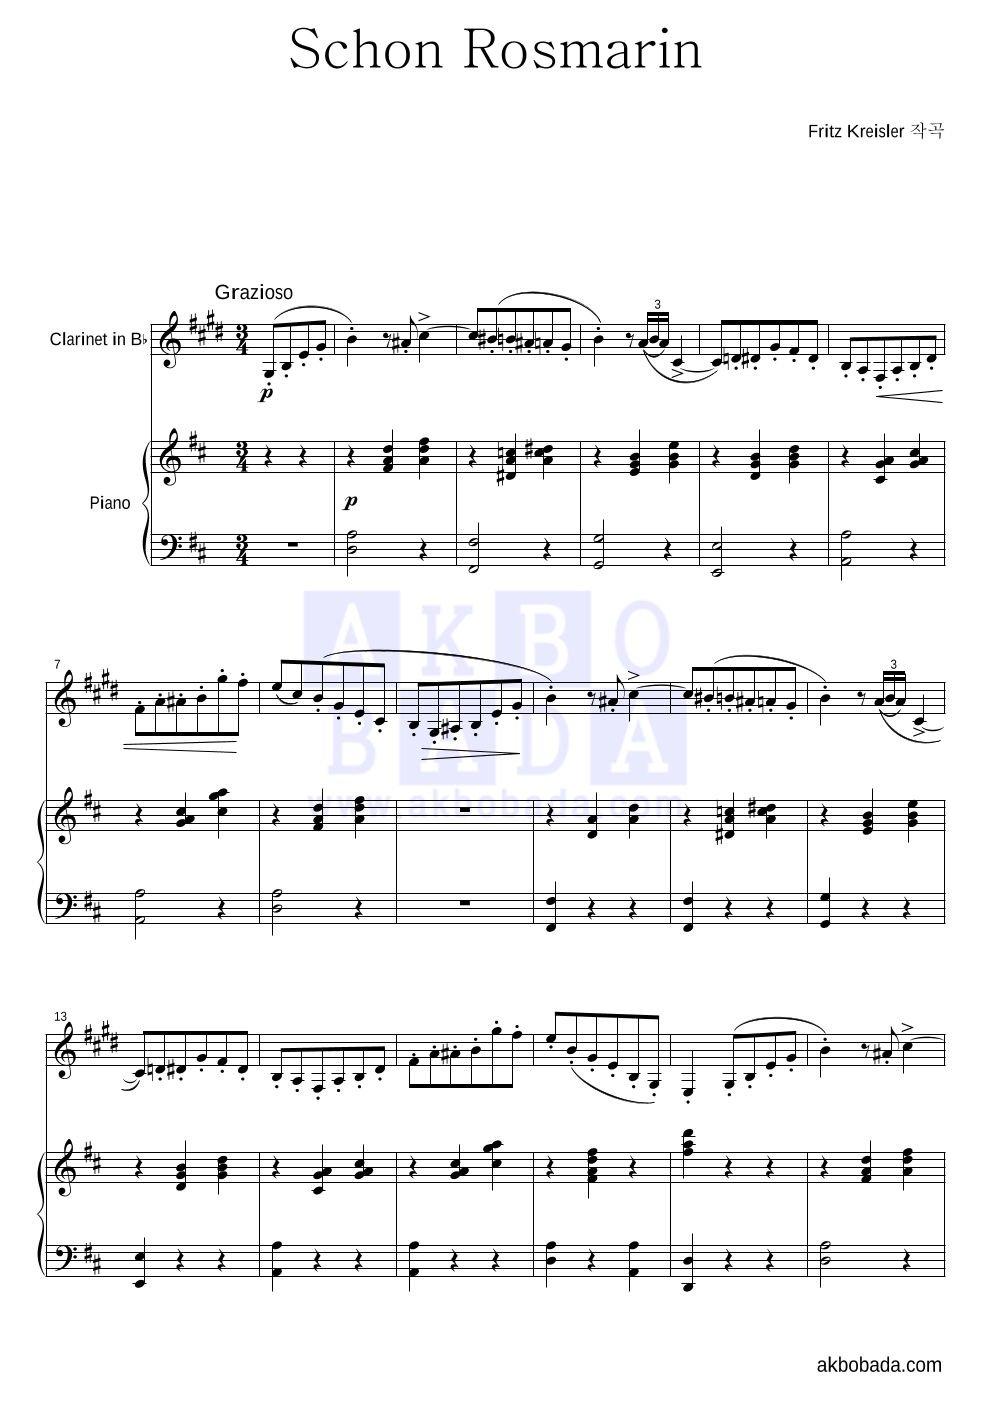 크라이슬러 - Schon Rosmarin (아름다운 로즈마린) 클라리넷&피아노 악보 